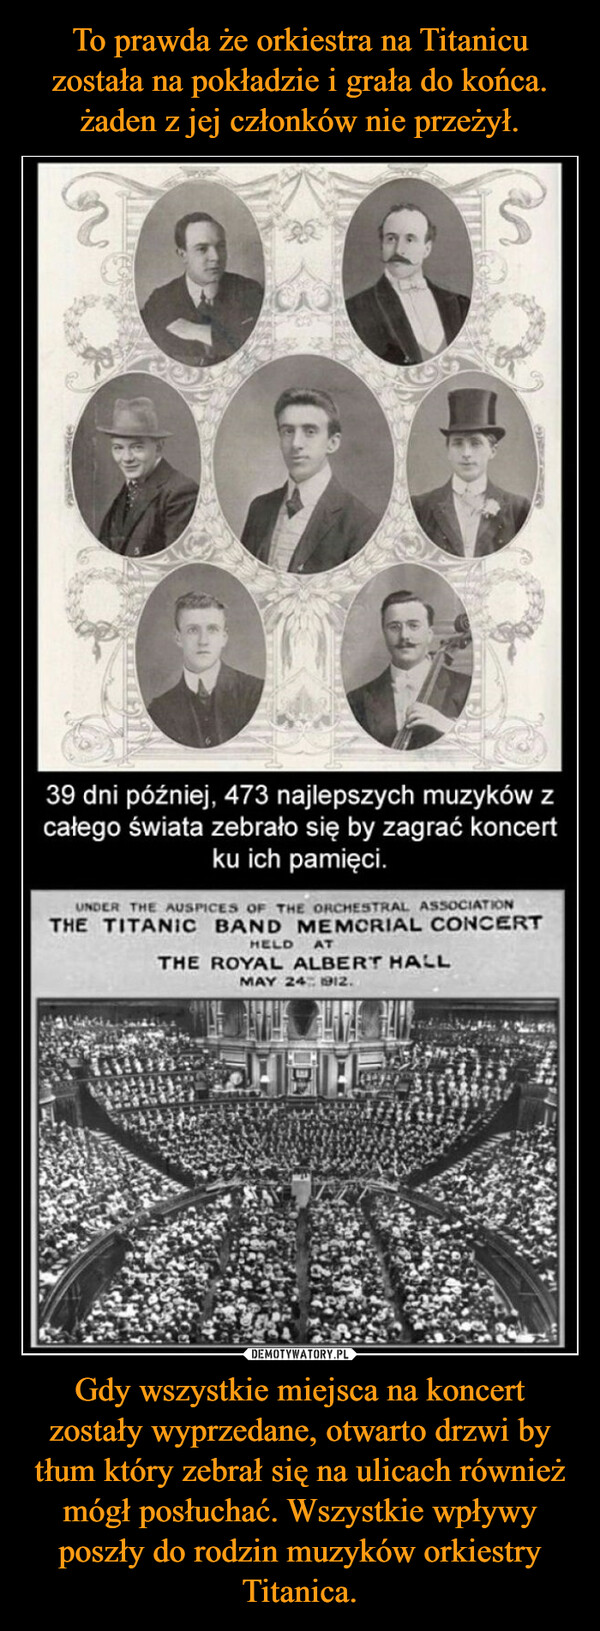 To prawda że orkiestra na Titanicu została na pokładzie i grała do końca. żaden z jej członków nie przeżył. Gdy wszystkie miejsca na koncert zostały wyprzedane, otwarto drzwi by tłum który zebrał się na ulicach również mógł posłuchać. Wszystkie wpływy poszły do rodzin muzyków orkiestry Titanica.